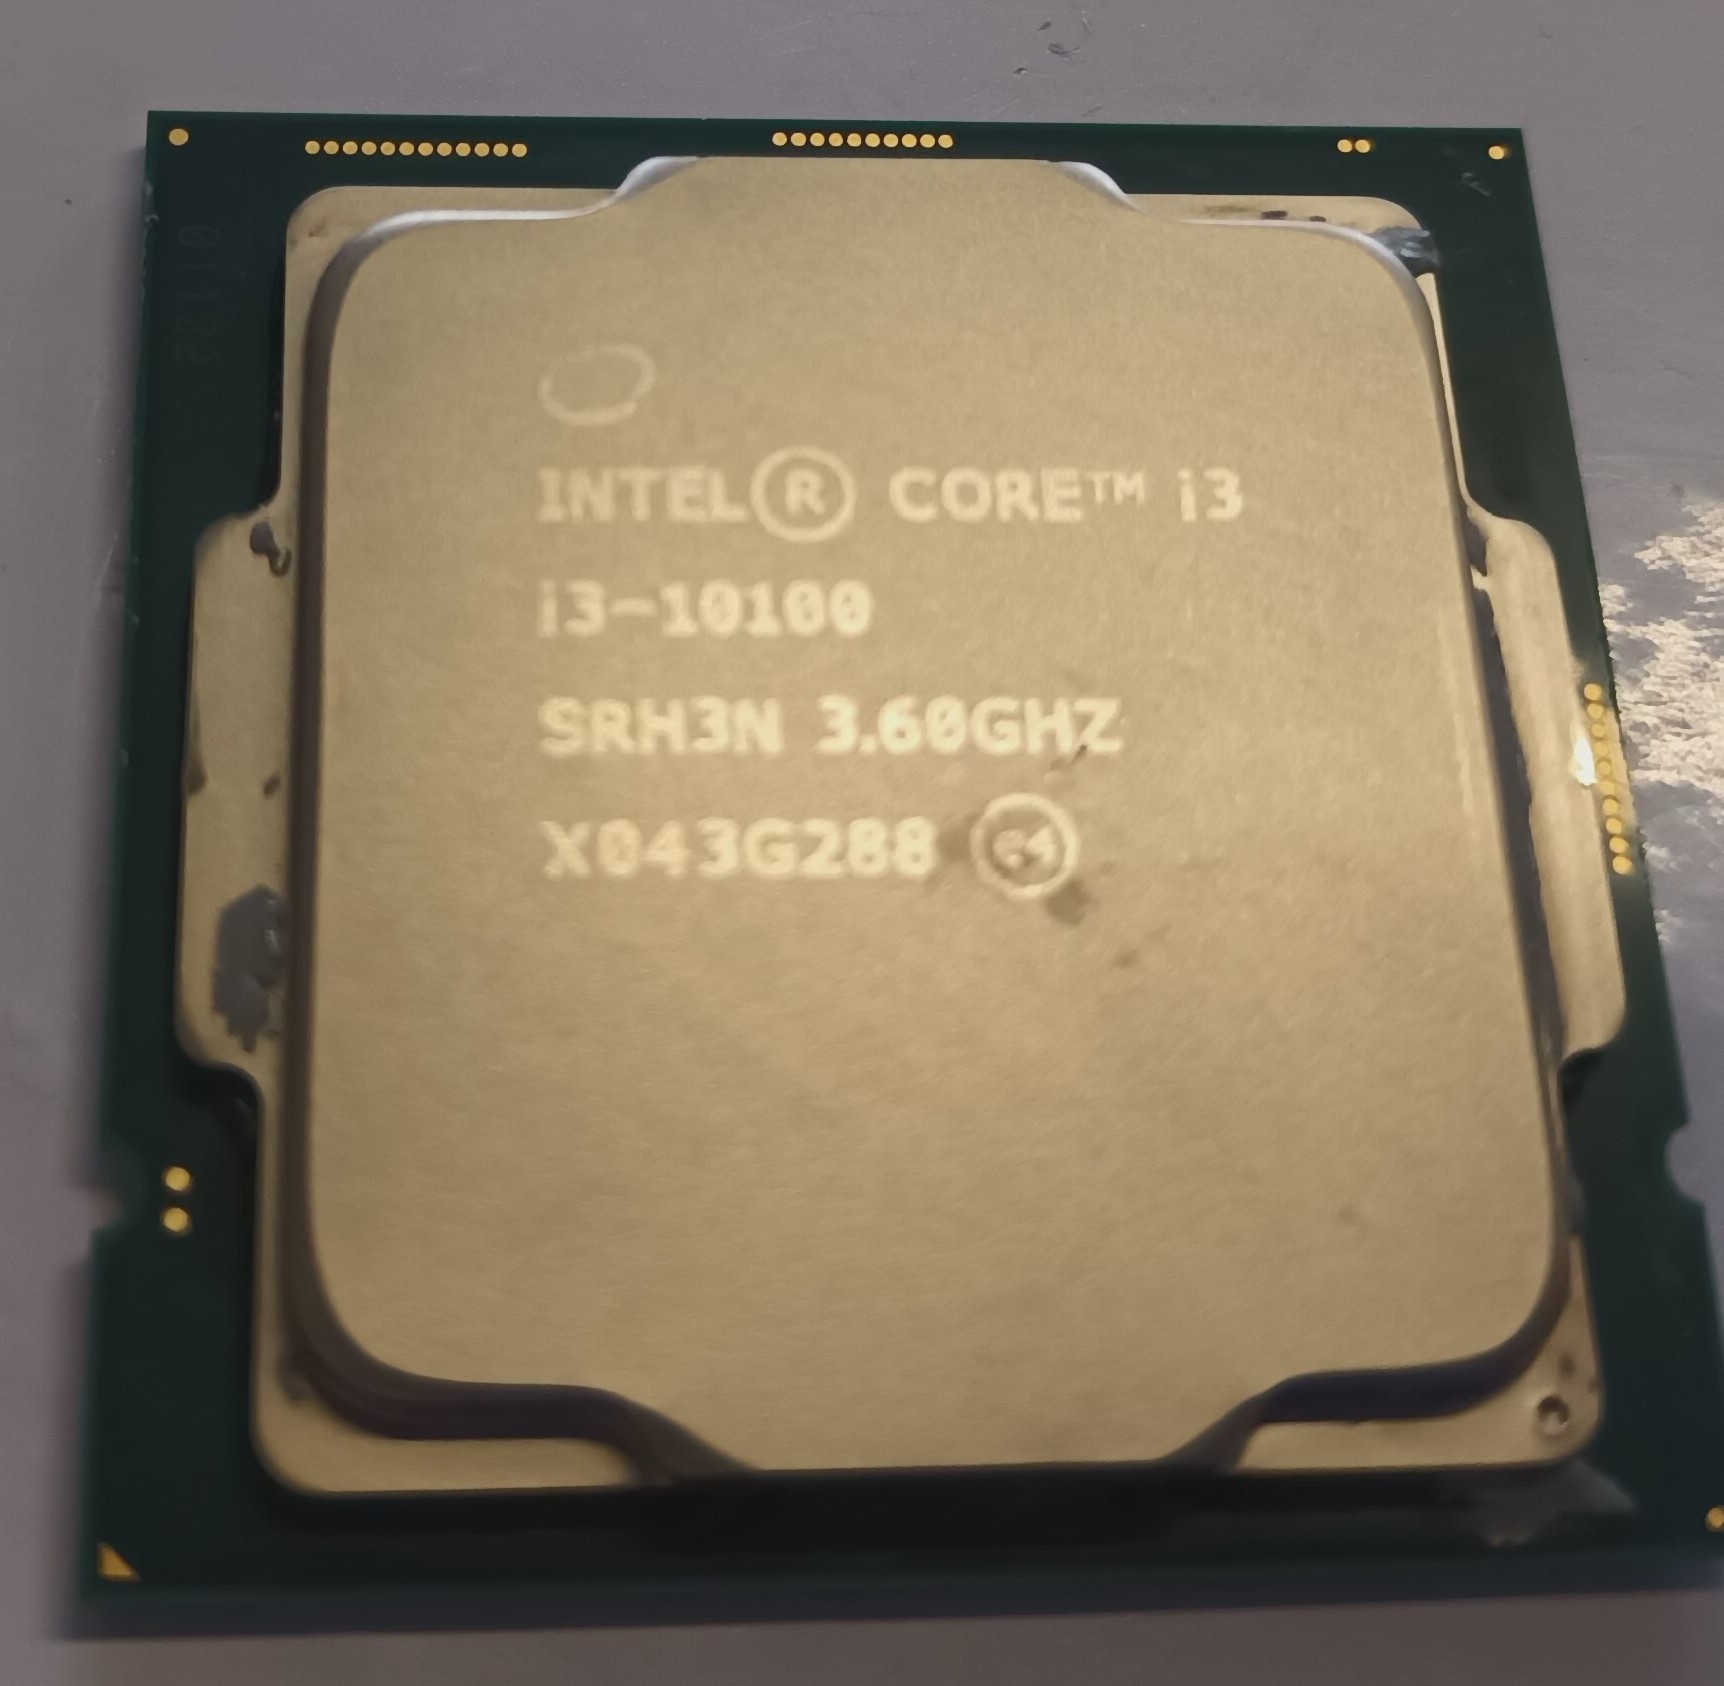 i3-10100 SRH3N 3.6GHZ CPU